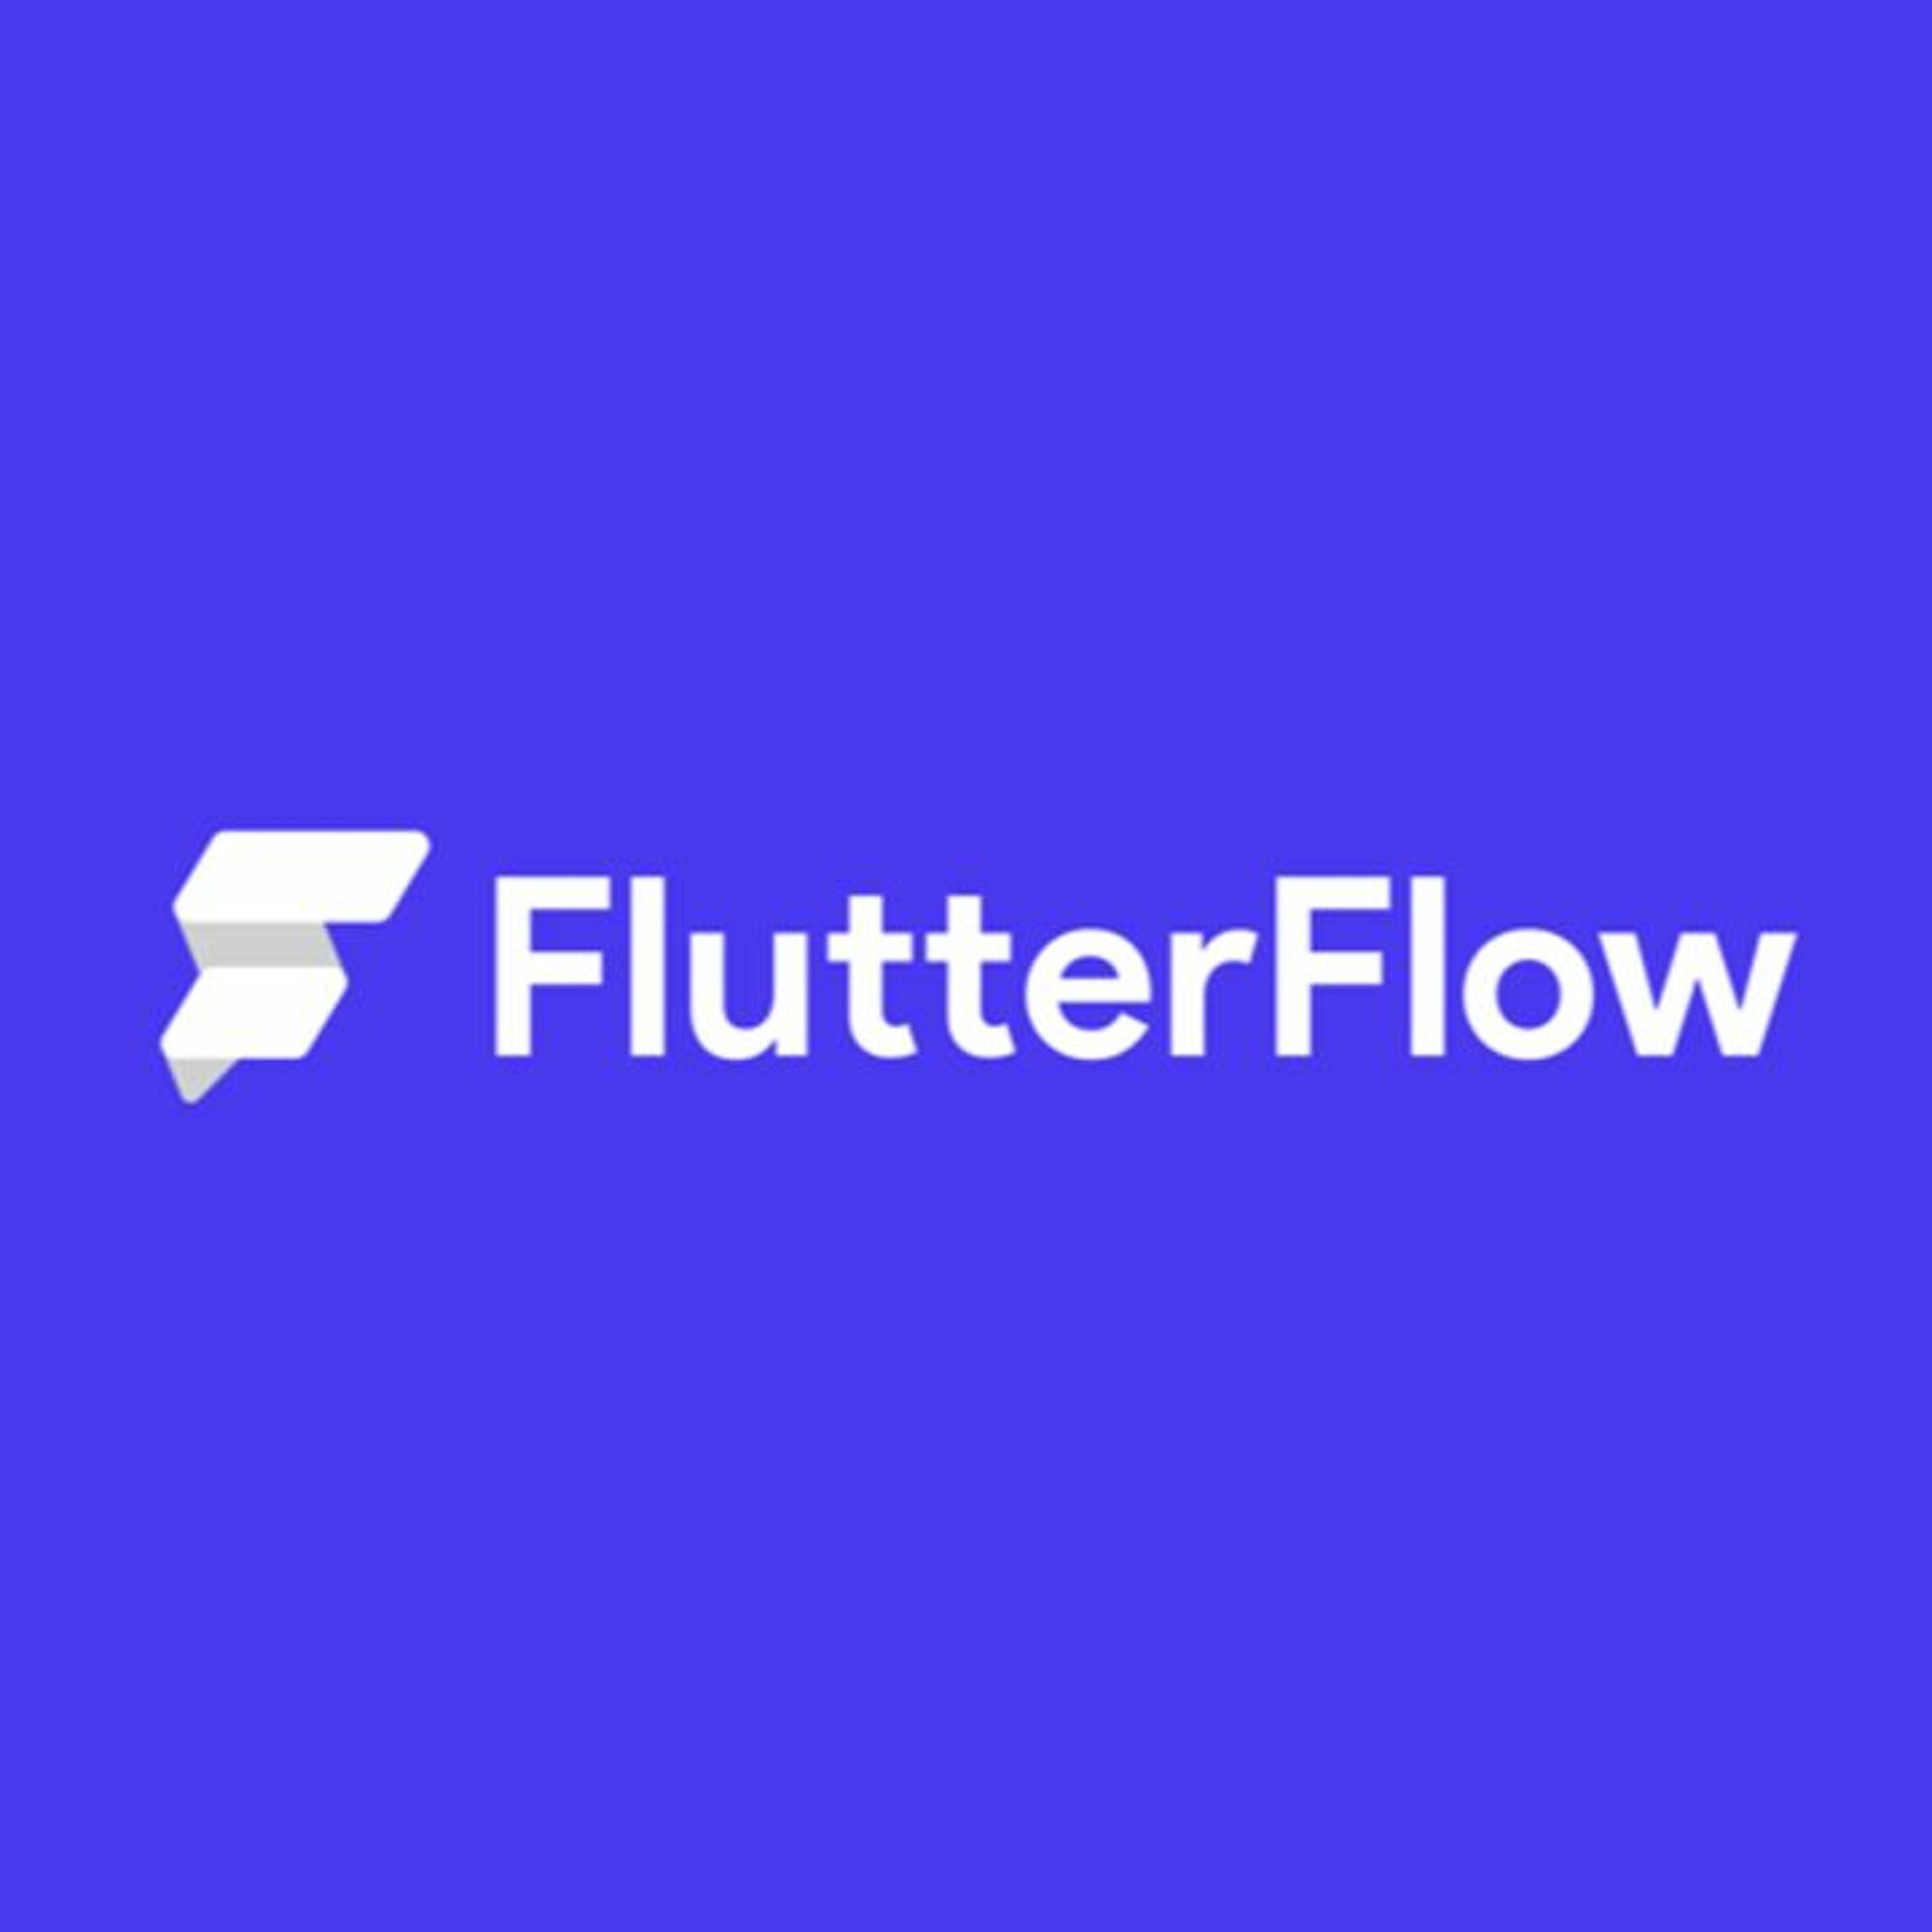 #41 Flutter Flow